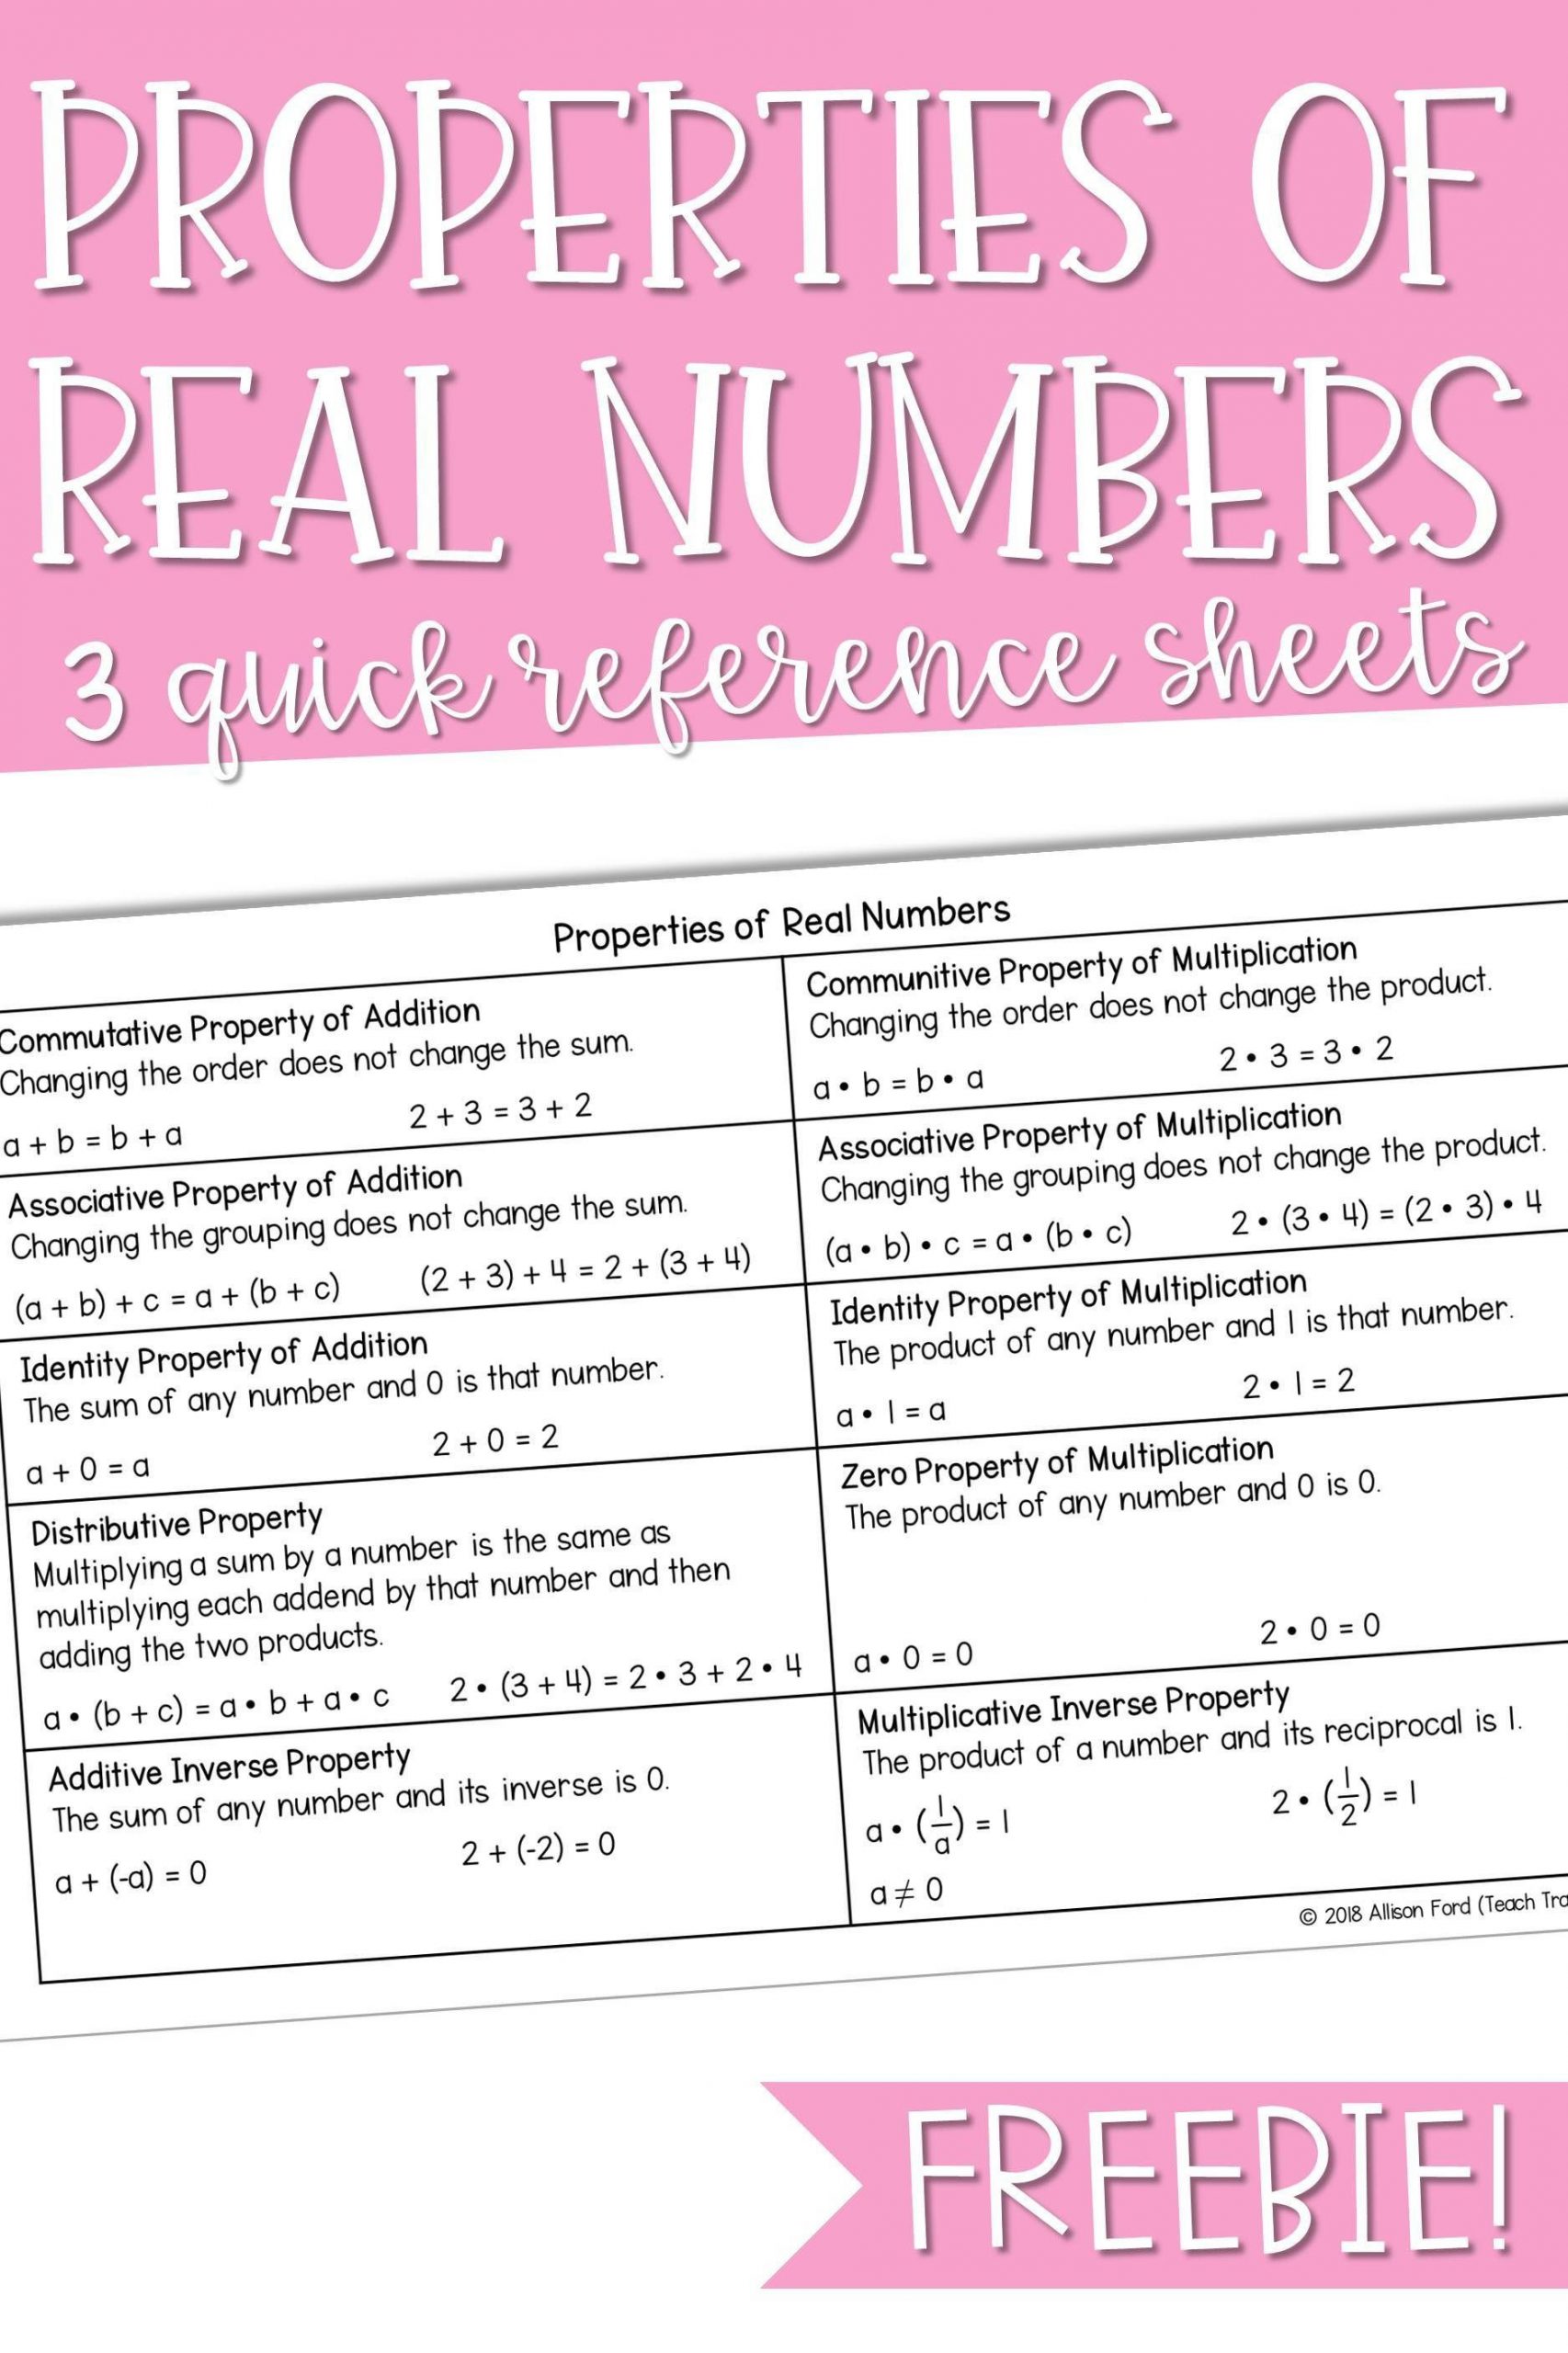 Properties Of Real Numbers Worksheet Properties Of Real Numbers Quick Reference Sheet